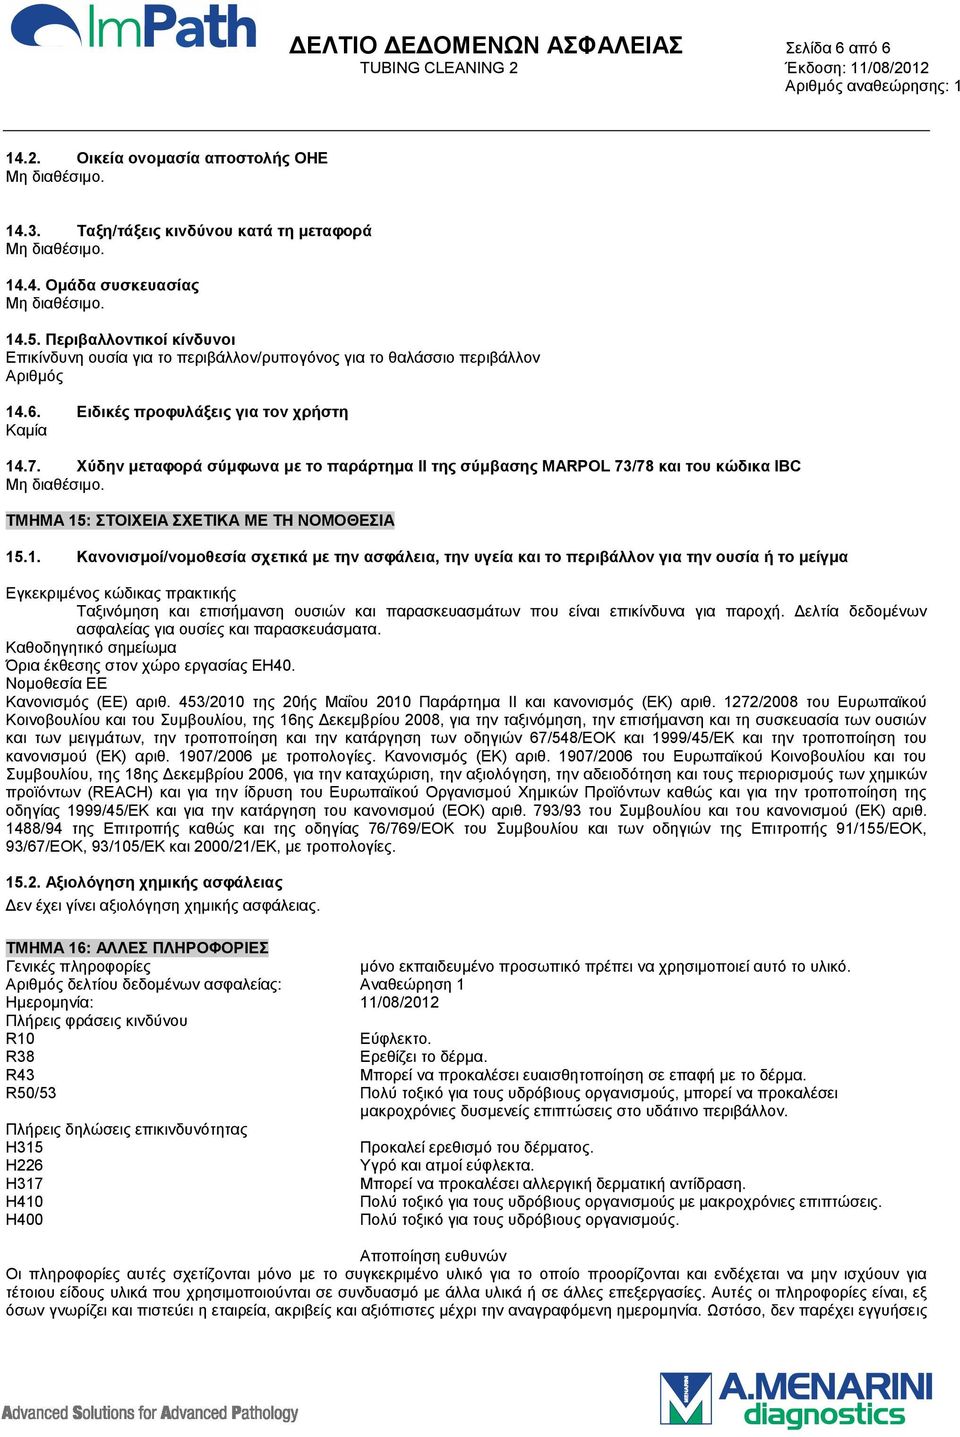 Χύδην μεταφορά σύμφωνα με το παράρτημα II της σύμβασης MARPΟL 73/78 και του κώδικα IBC ΤΜΗΜΑ 15